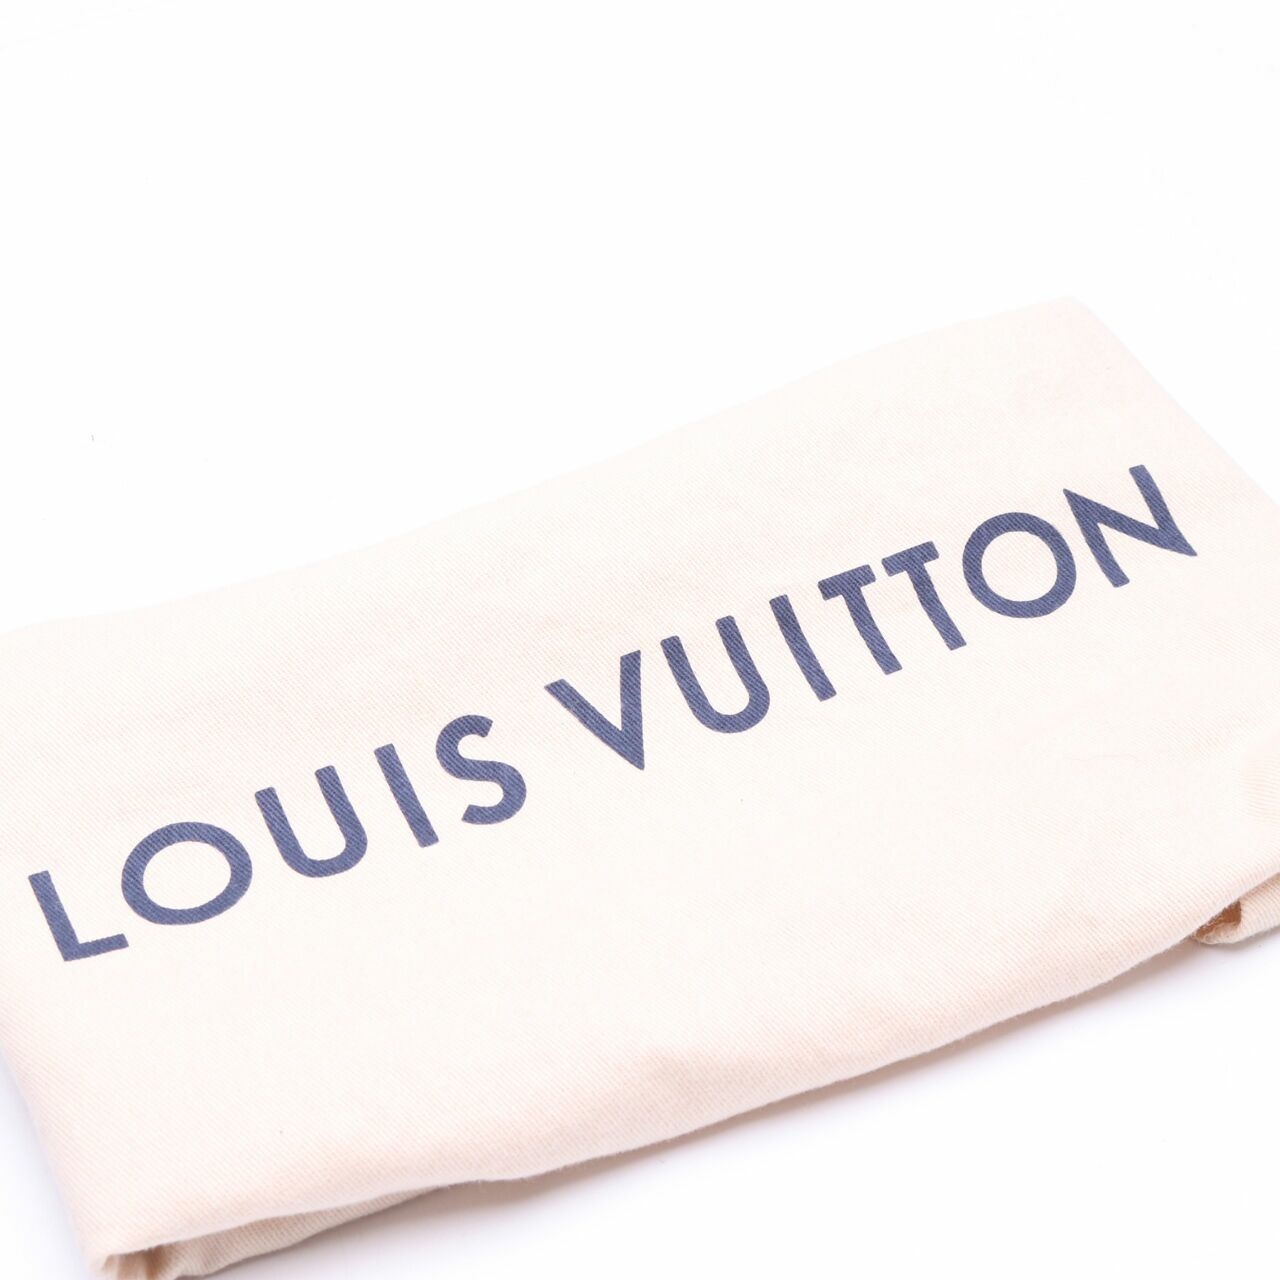 Louis Vuitton Speedy Tri-color Bandouliere Satchel Bag